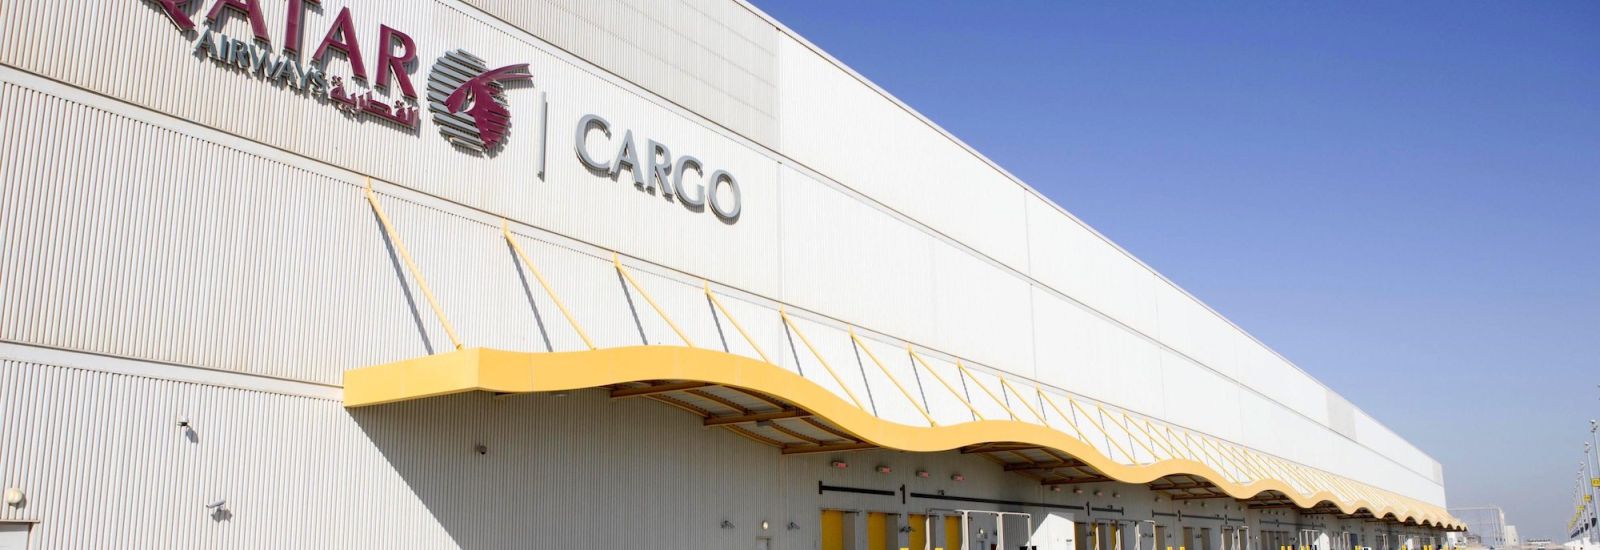 Exterior of Qatar Airways Cargo processing center